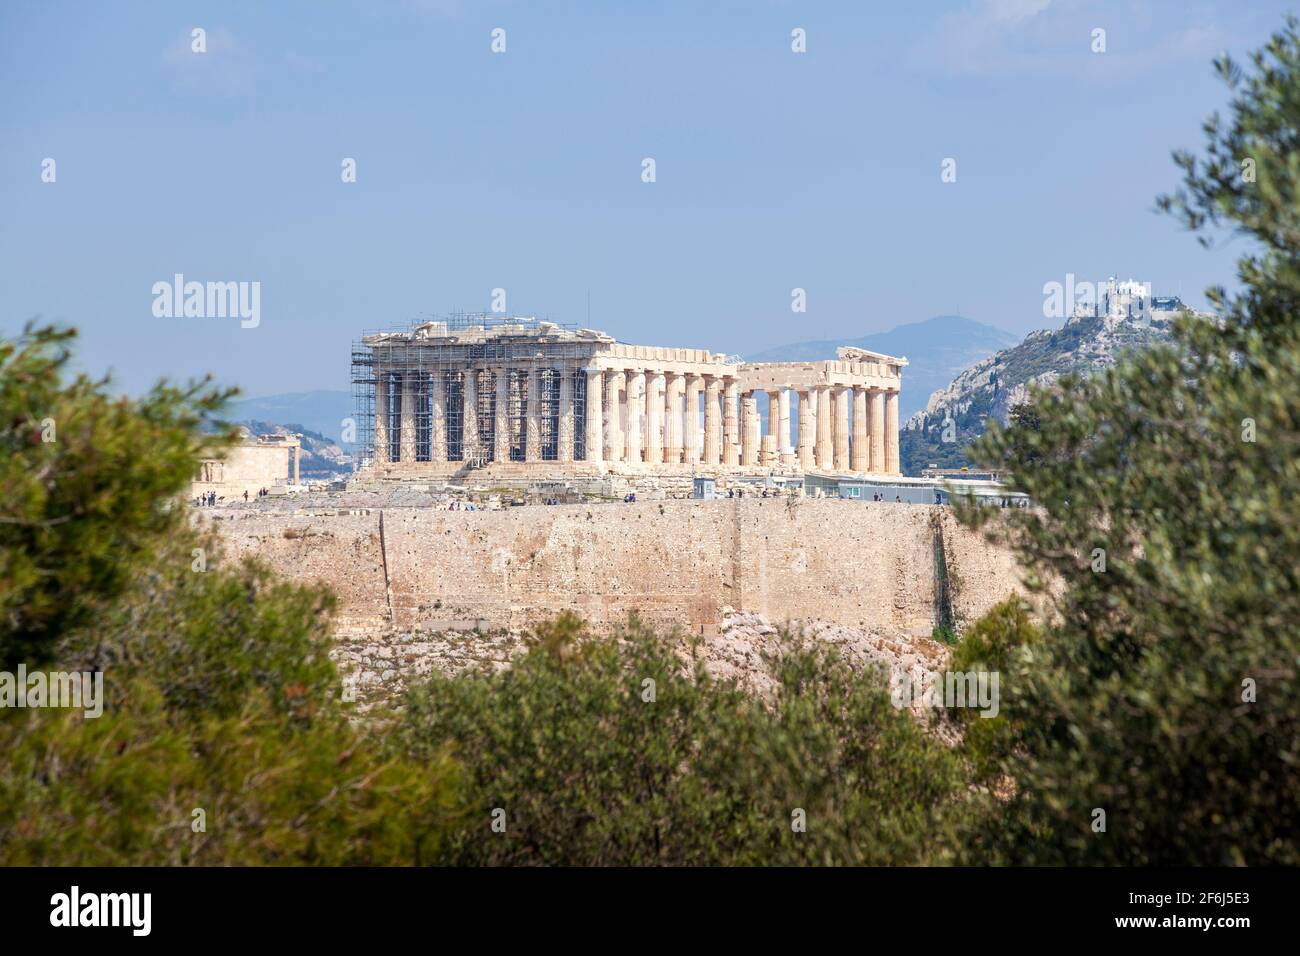 Vista del Partenone dalla collina di Filopappou. Si può vedere il tempio del Partenone, del V secolo a.C., sulla collina sacra di Akropolis, ad Atene, in Grecia. Foto Stock